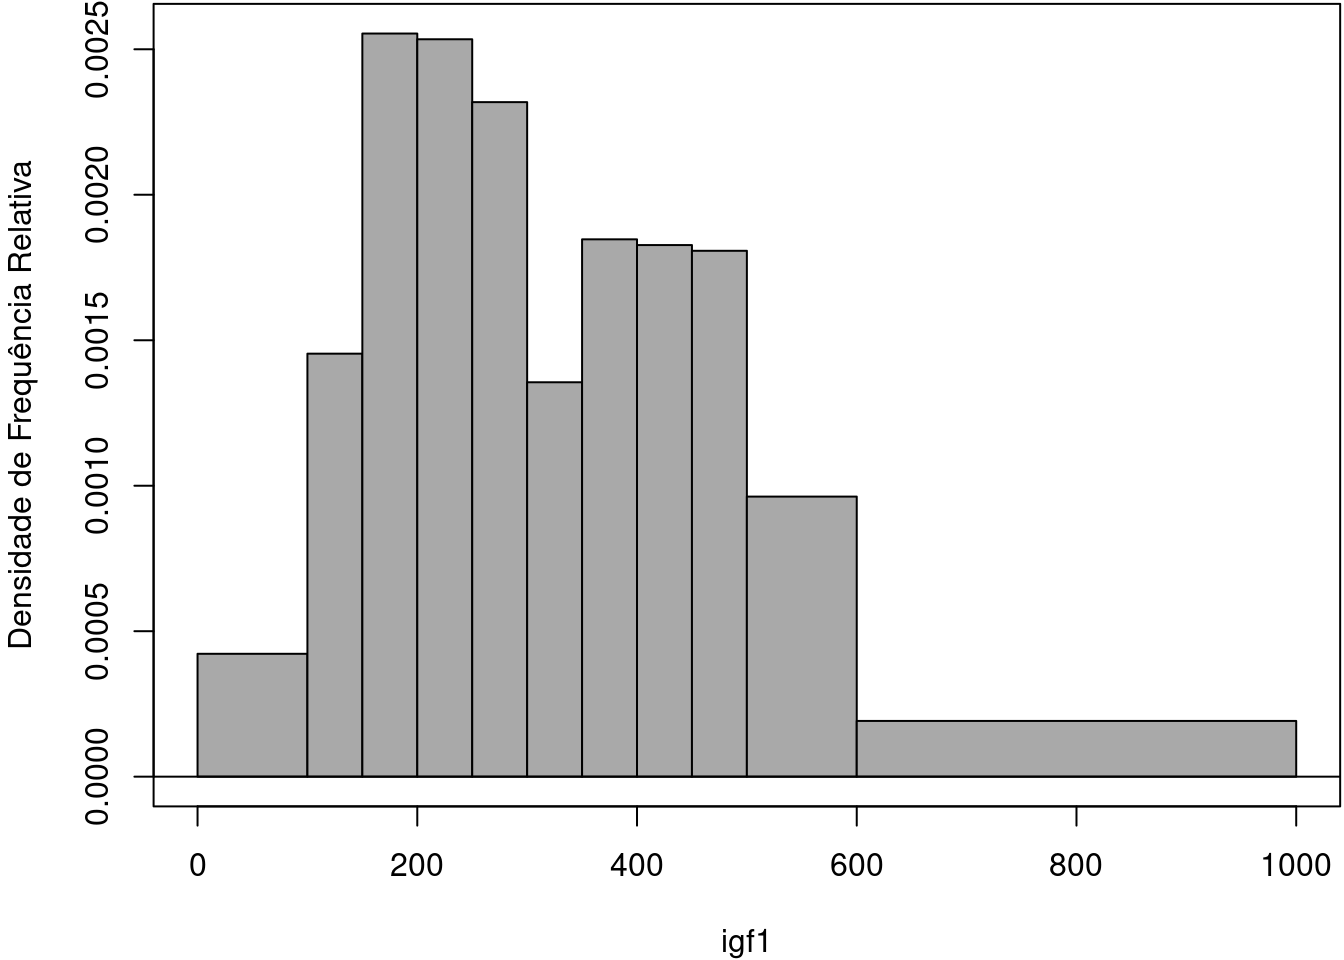 Histograma de densidade de frequência relativa da variável igf1 para as classes definidas conforme a tabela 11.1.